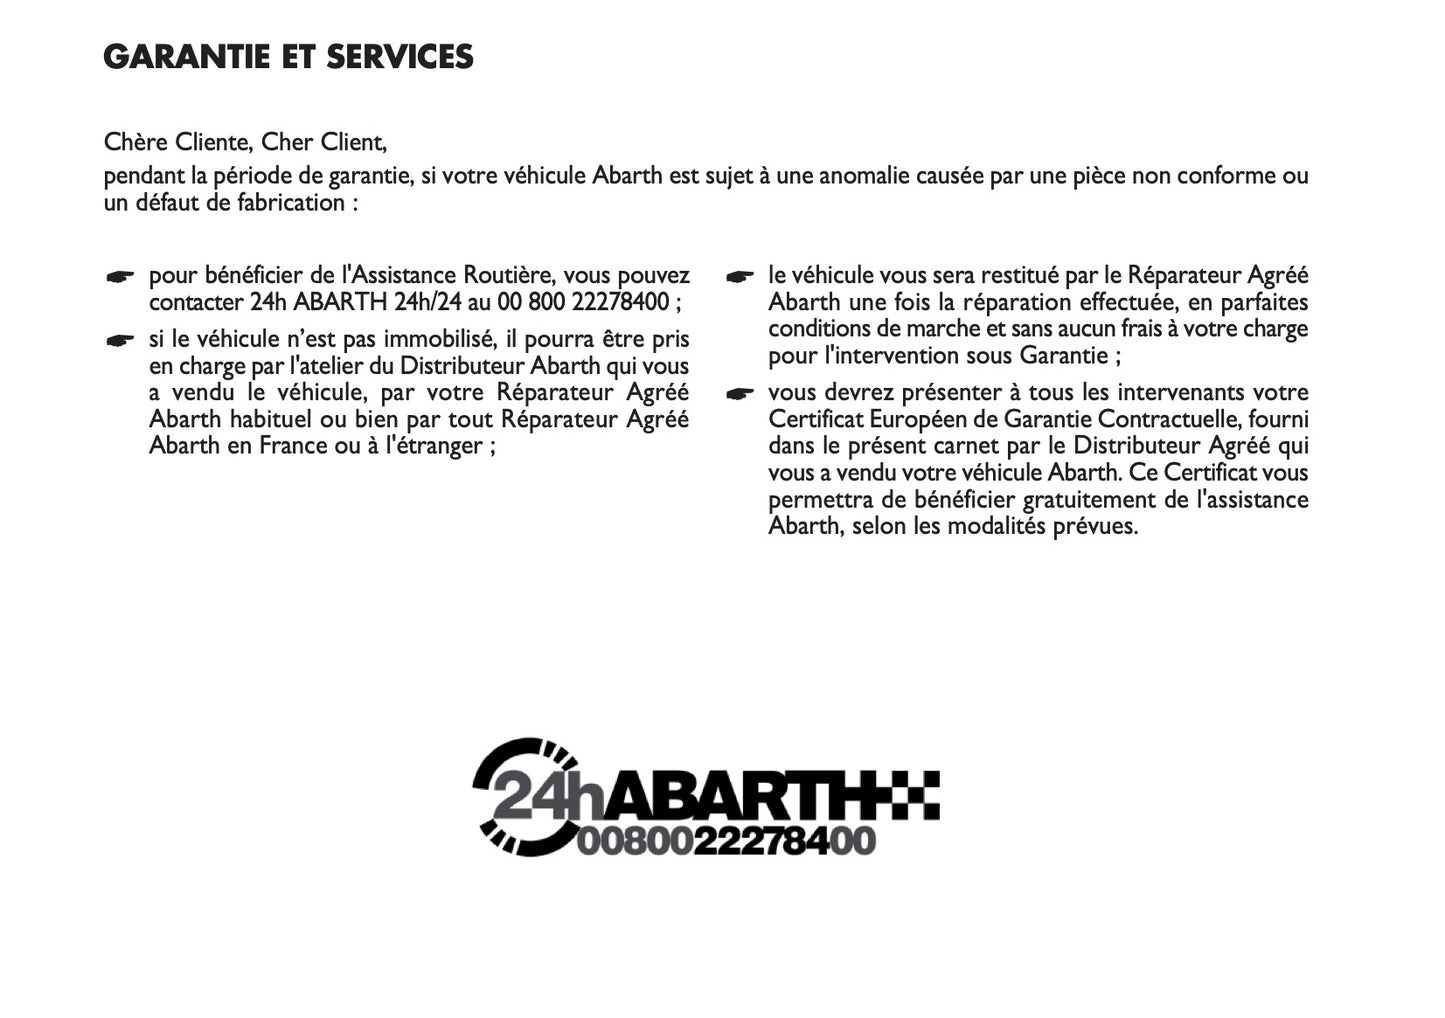 Abarth Garantie et Services 2016 - 2019